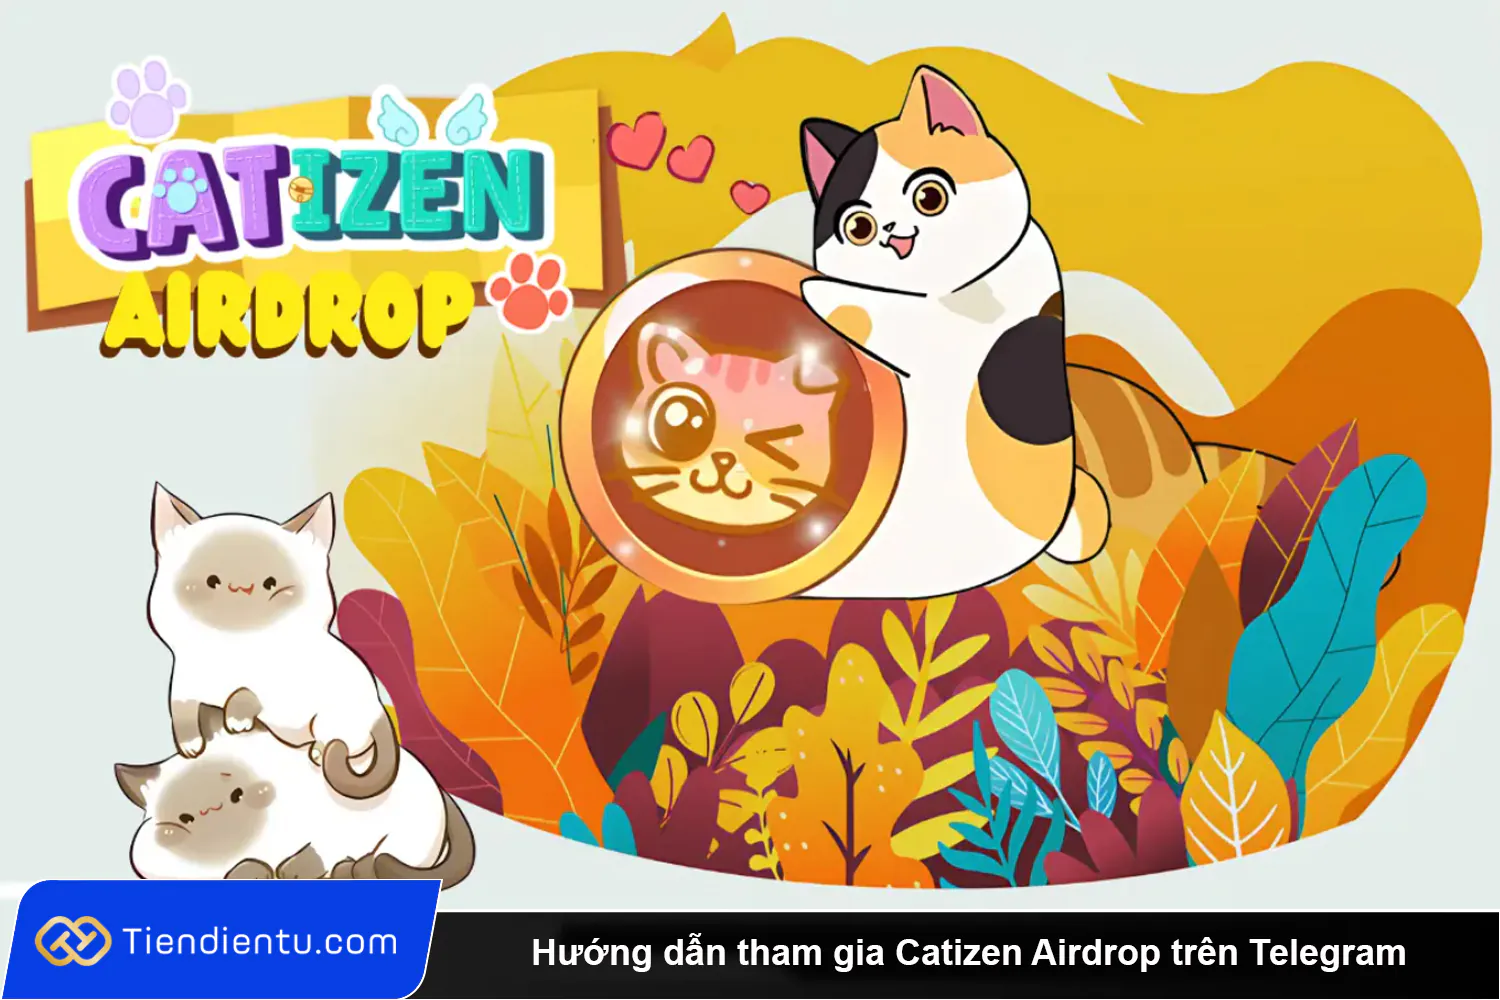 Huong dan tham gia Catizen Airdrop tren Telegram